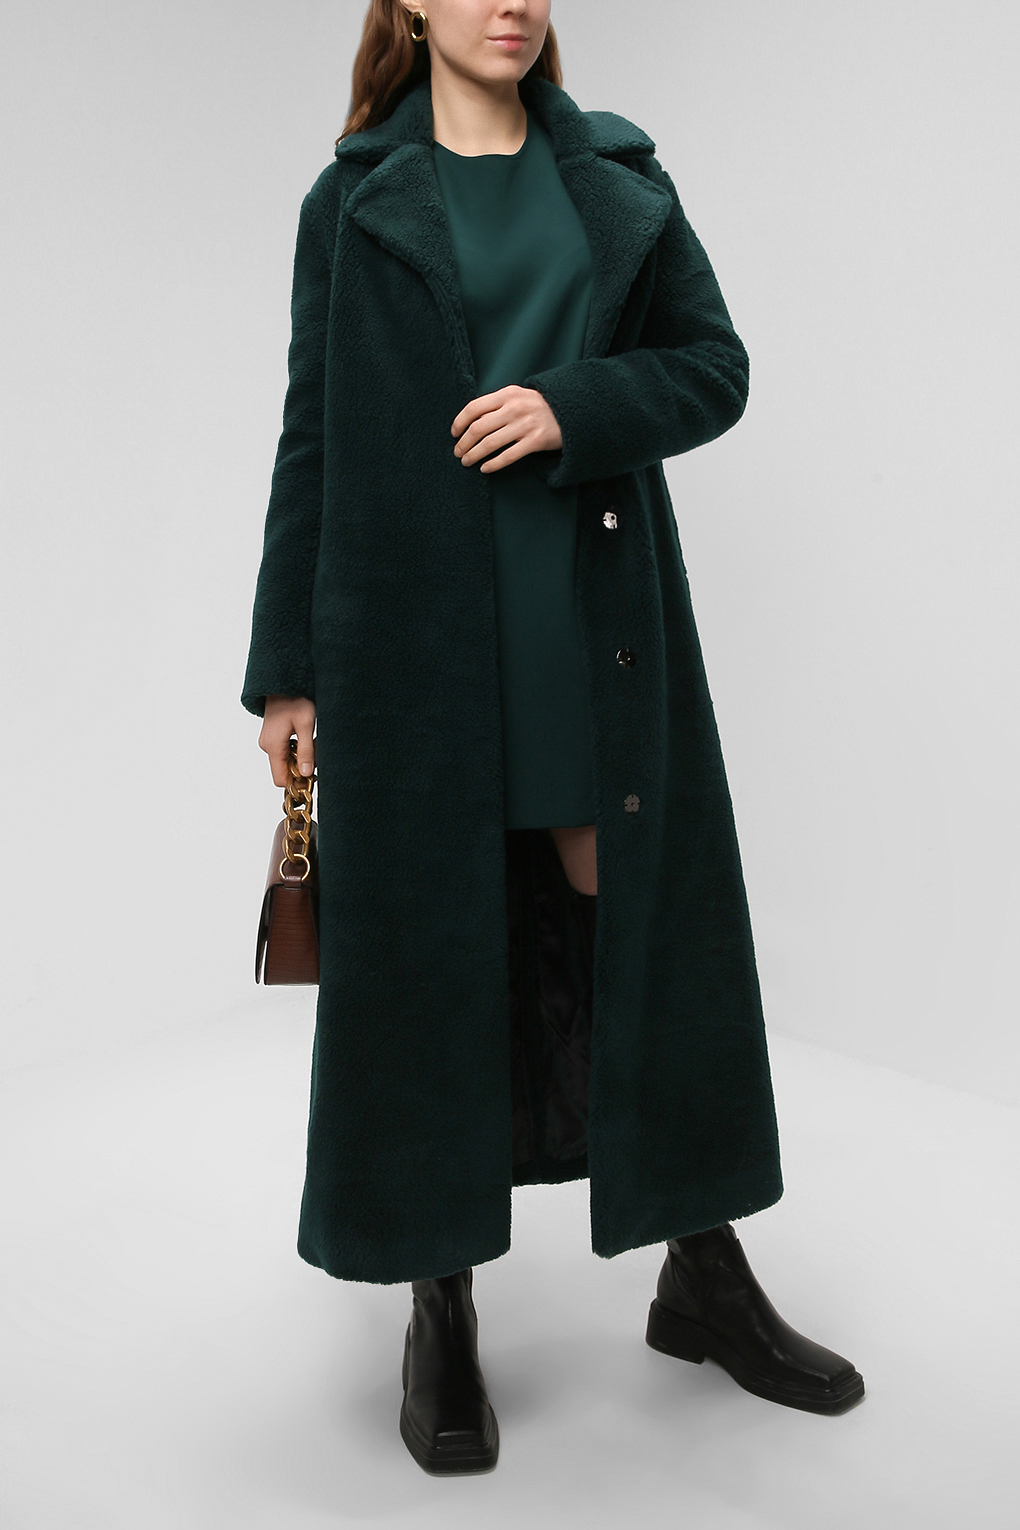 Пальто женское PAOLA RAY PR221-9046-01 зеленое XS